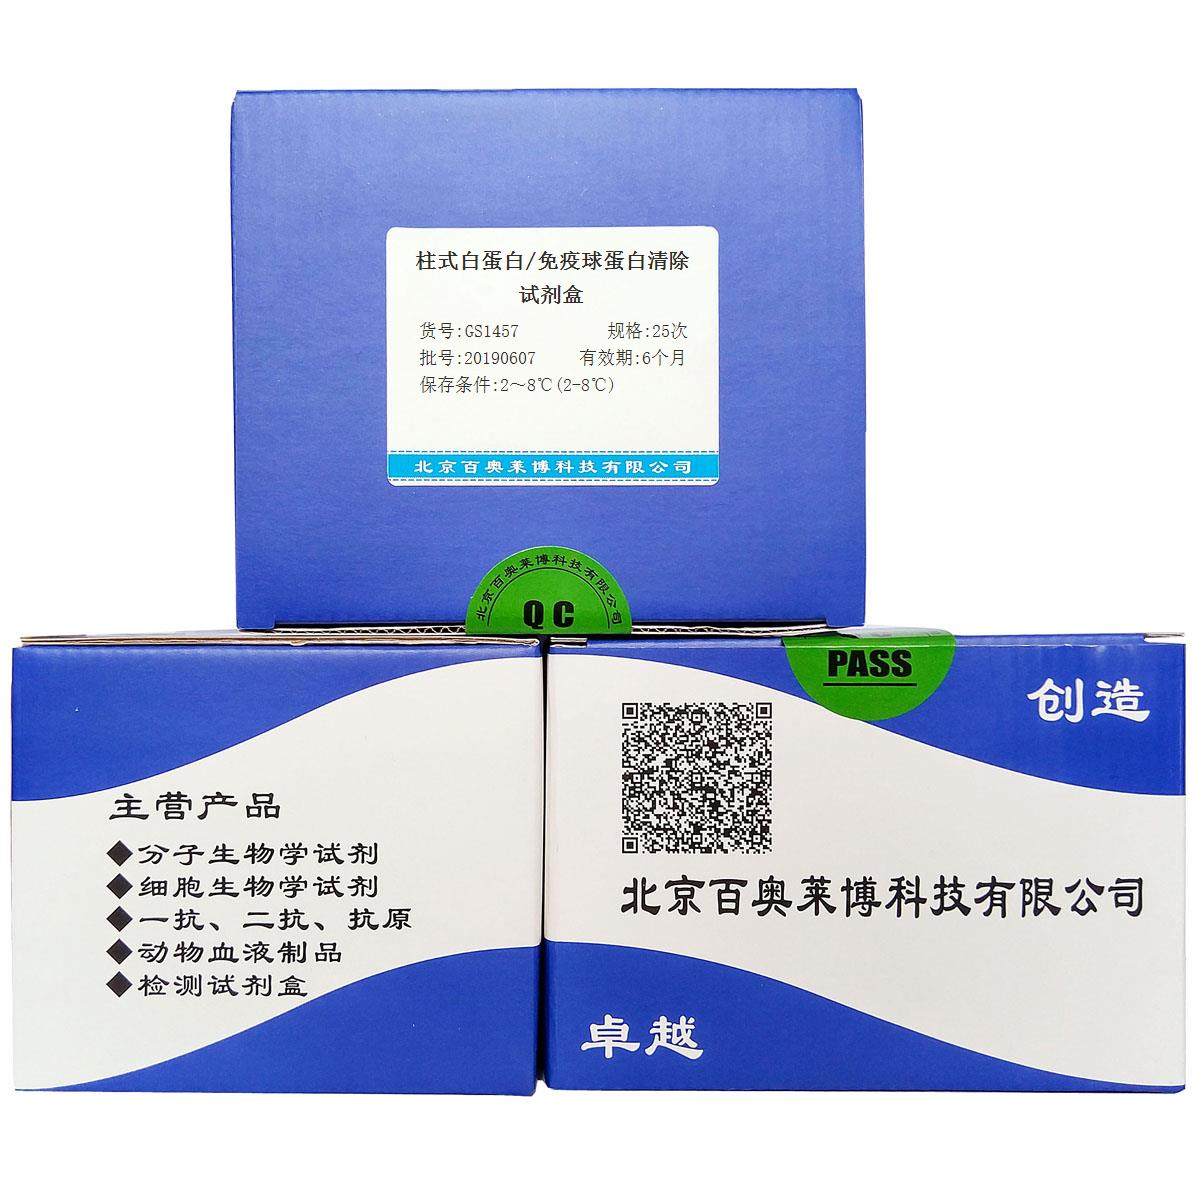 柱式白蛋白/免疫球蛋白清除试剂盒北京价格